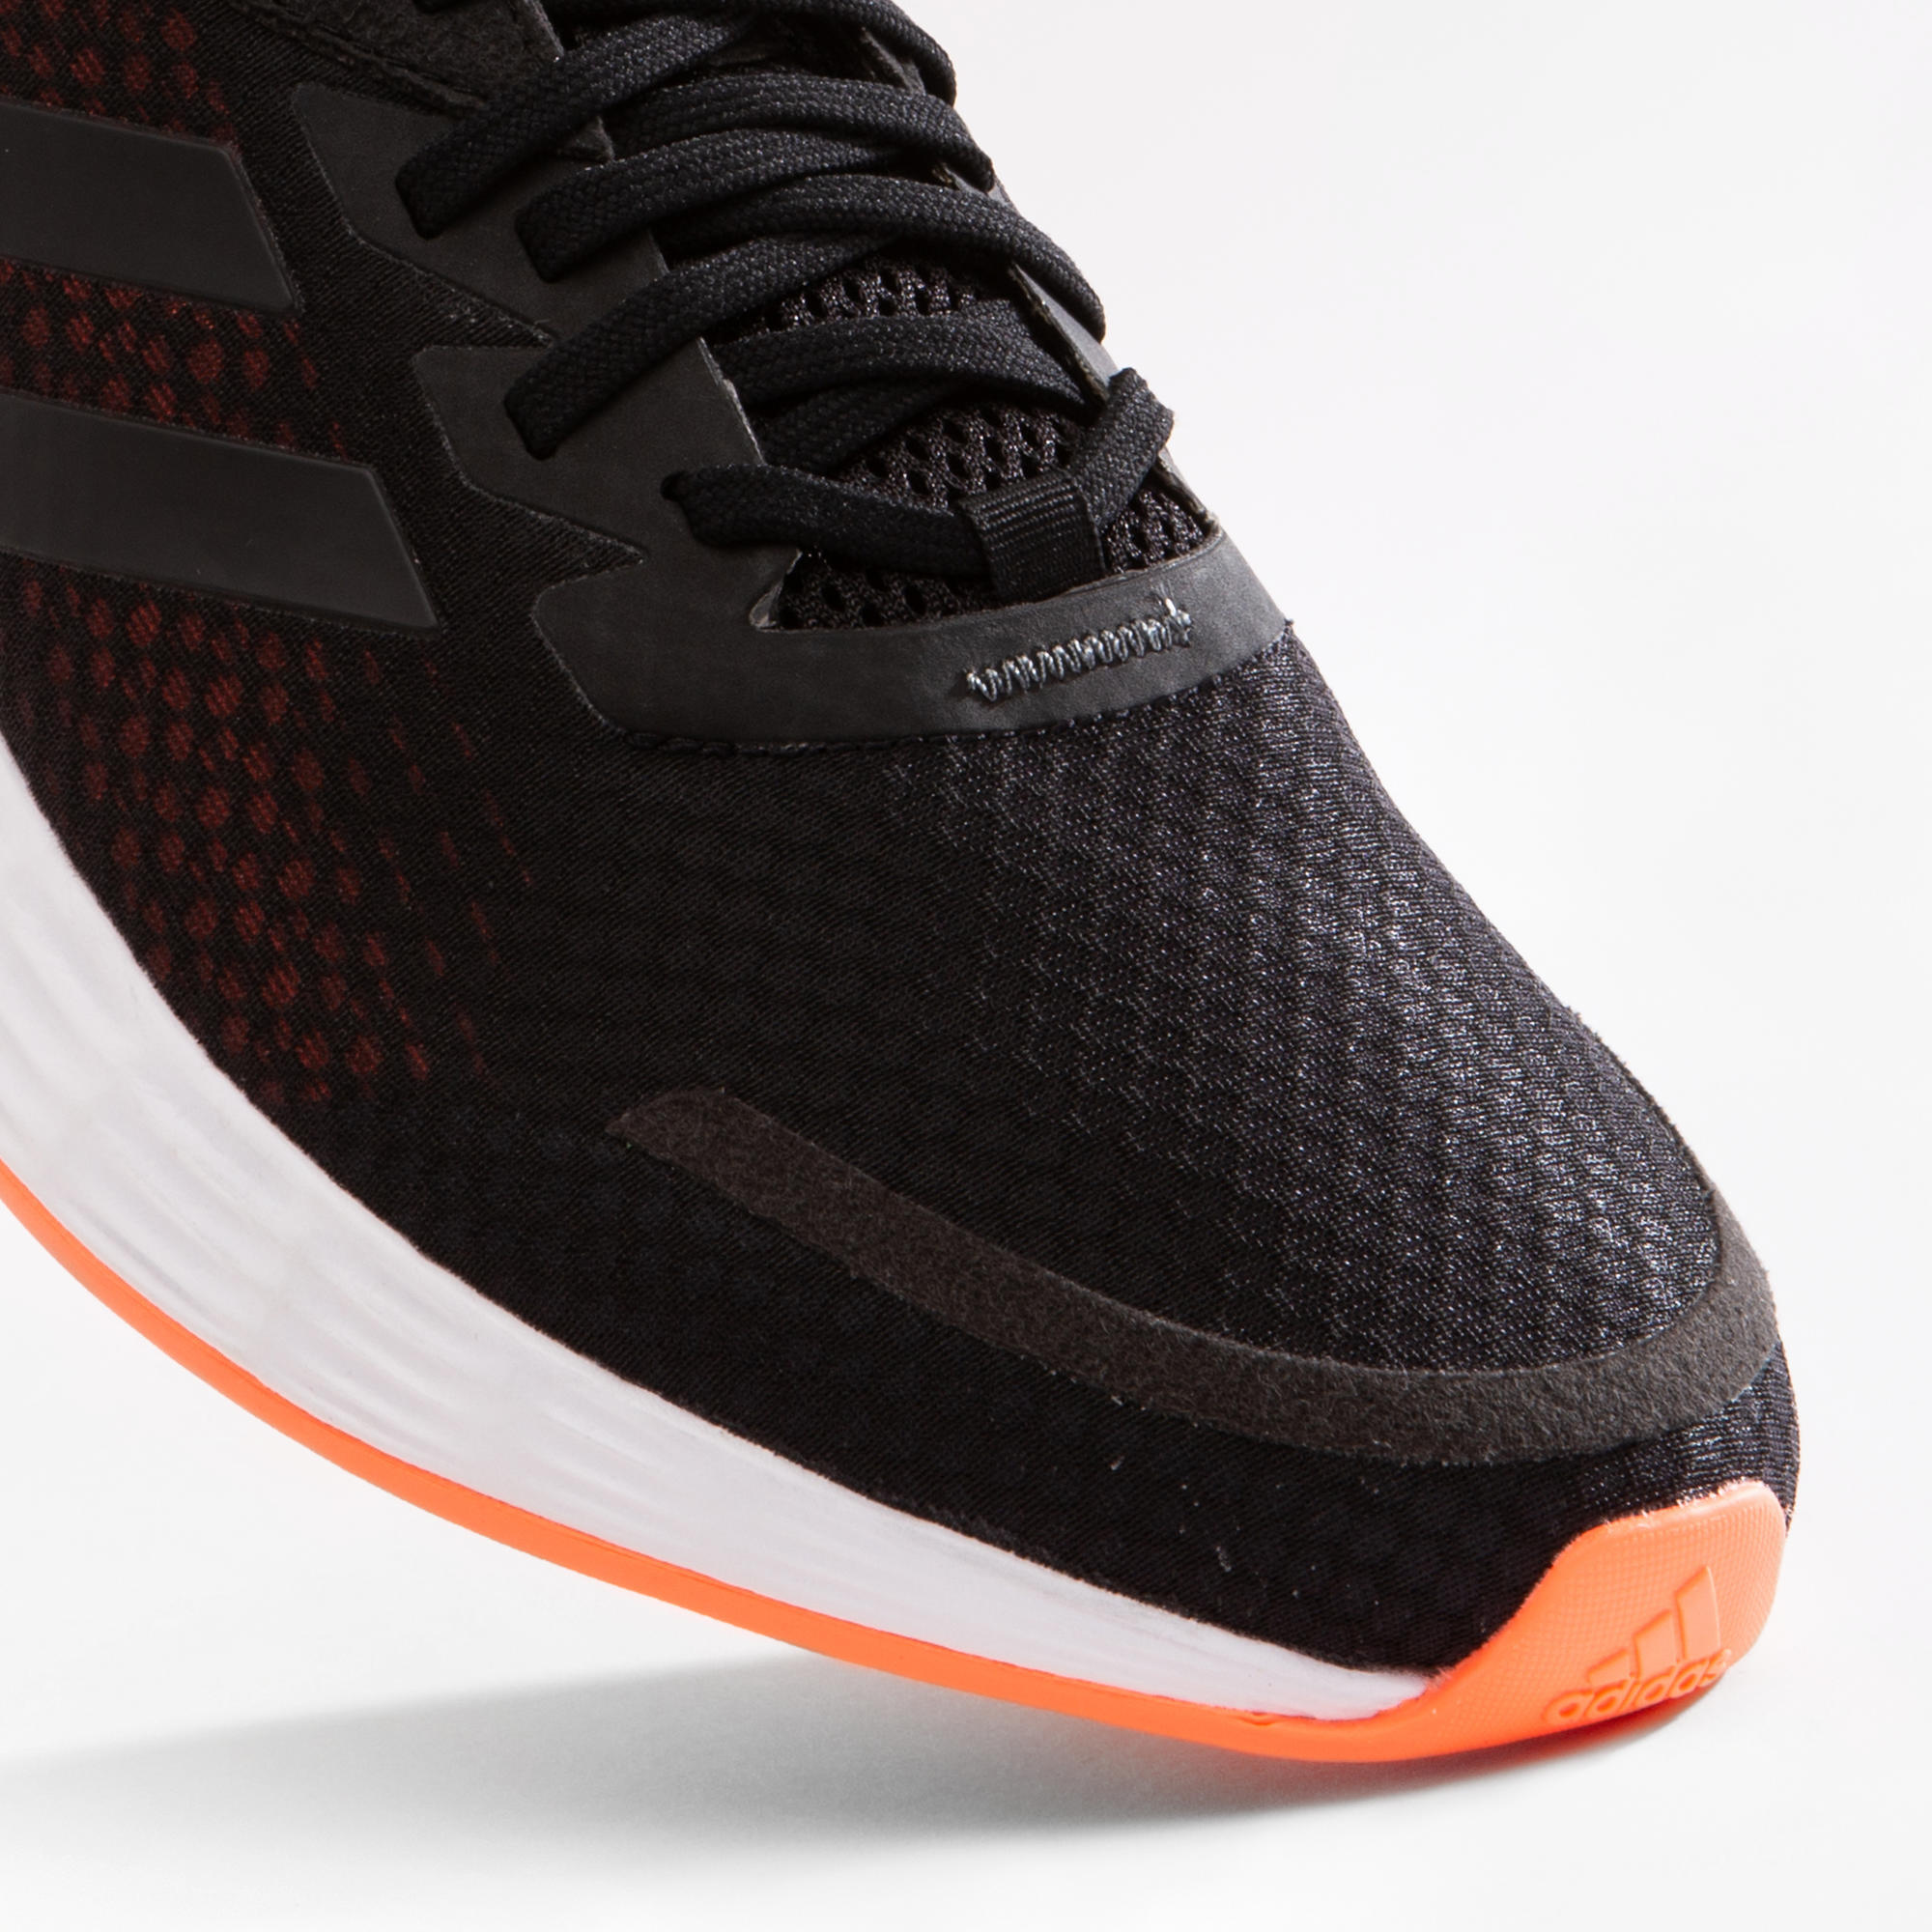 Adidas Running Homme Decathlon Sale Online, SAVE 32% - www